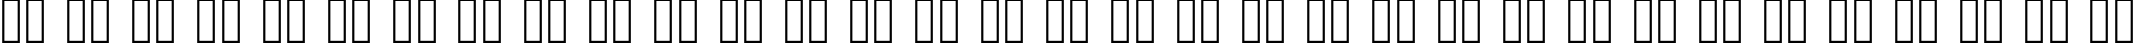 Пример написания русского алфавита шрифтом Rave